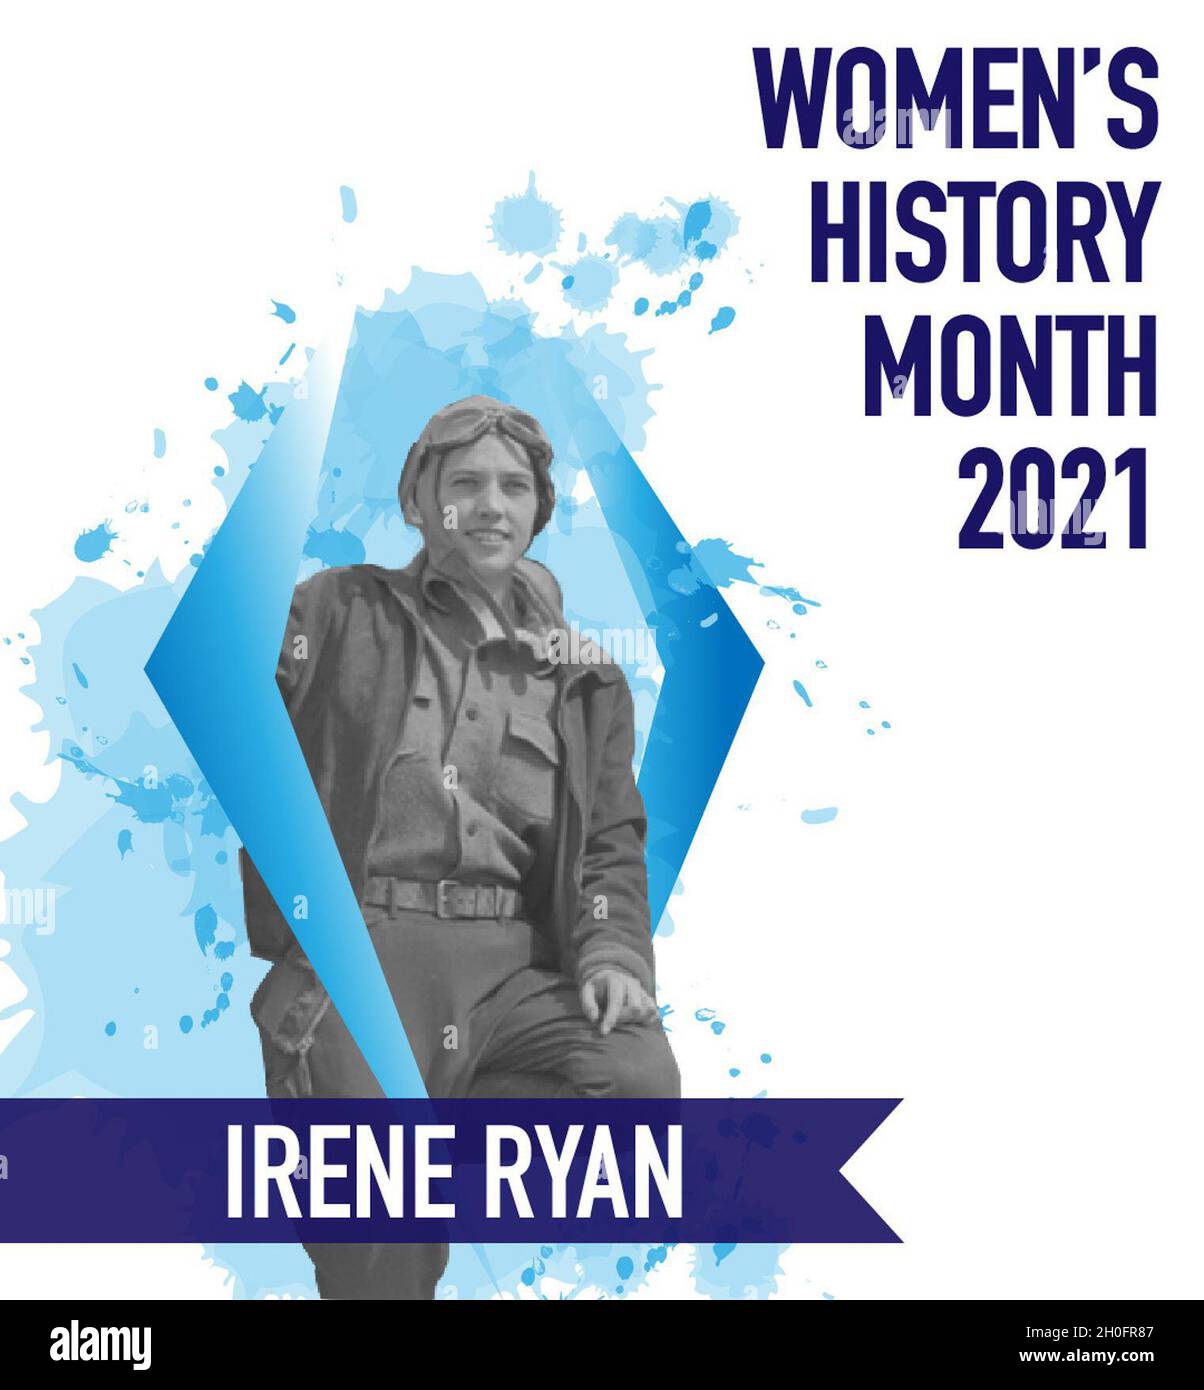 Irene Ryan wurde 1909 in Boston geboren und zog am 23. Juni 1932 nach Alaska. Als sie als erste Frau erfolgreich einen Soloflug im Gebiet von Alaska absolvierte, half sie dabei, Geschlechterbarrieren zu überwinden. Während ihrer Zeit in The Last Frontier arbeitete sie für die Civilian Aeronautics Authority (CAA), die Flugplätze entwarf. Sie diente im Repräsentantenhaus von Alaska und später im Senat des Bundesstaates, nachdem Alaska ein Staat wurde. Stockfoto